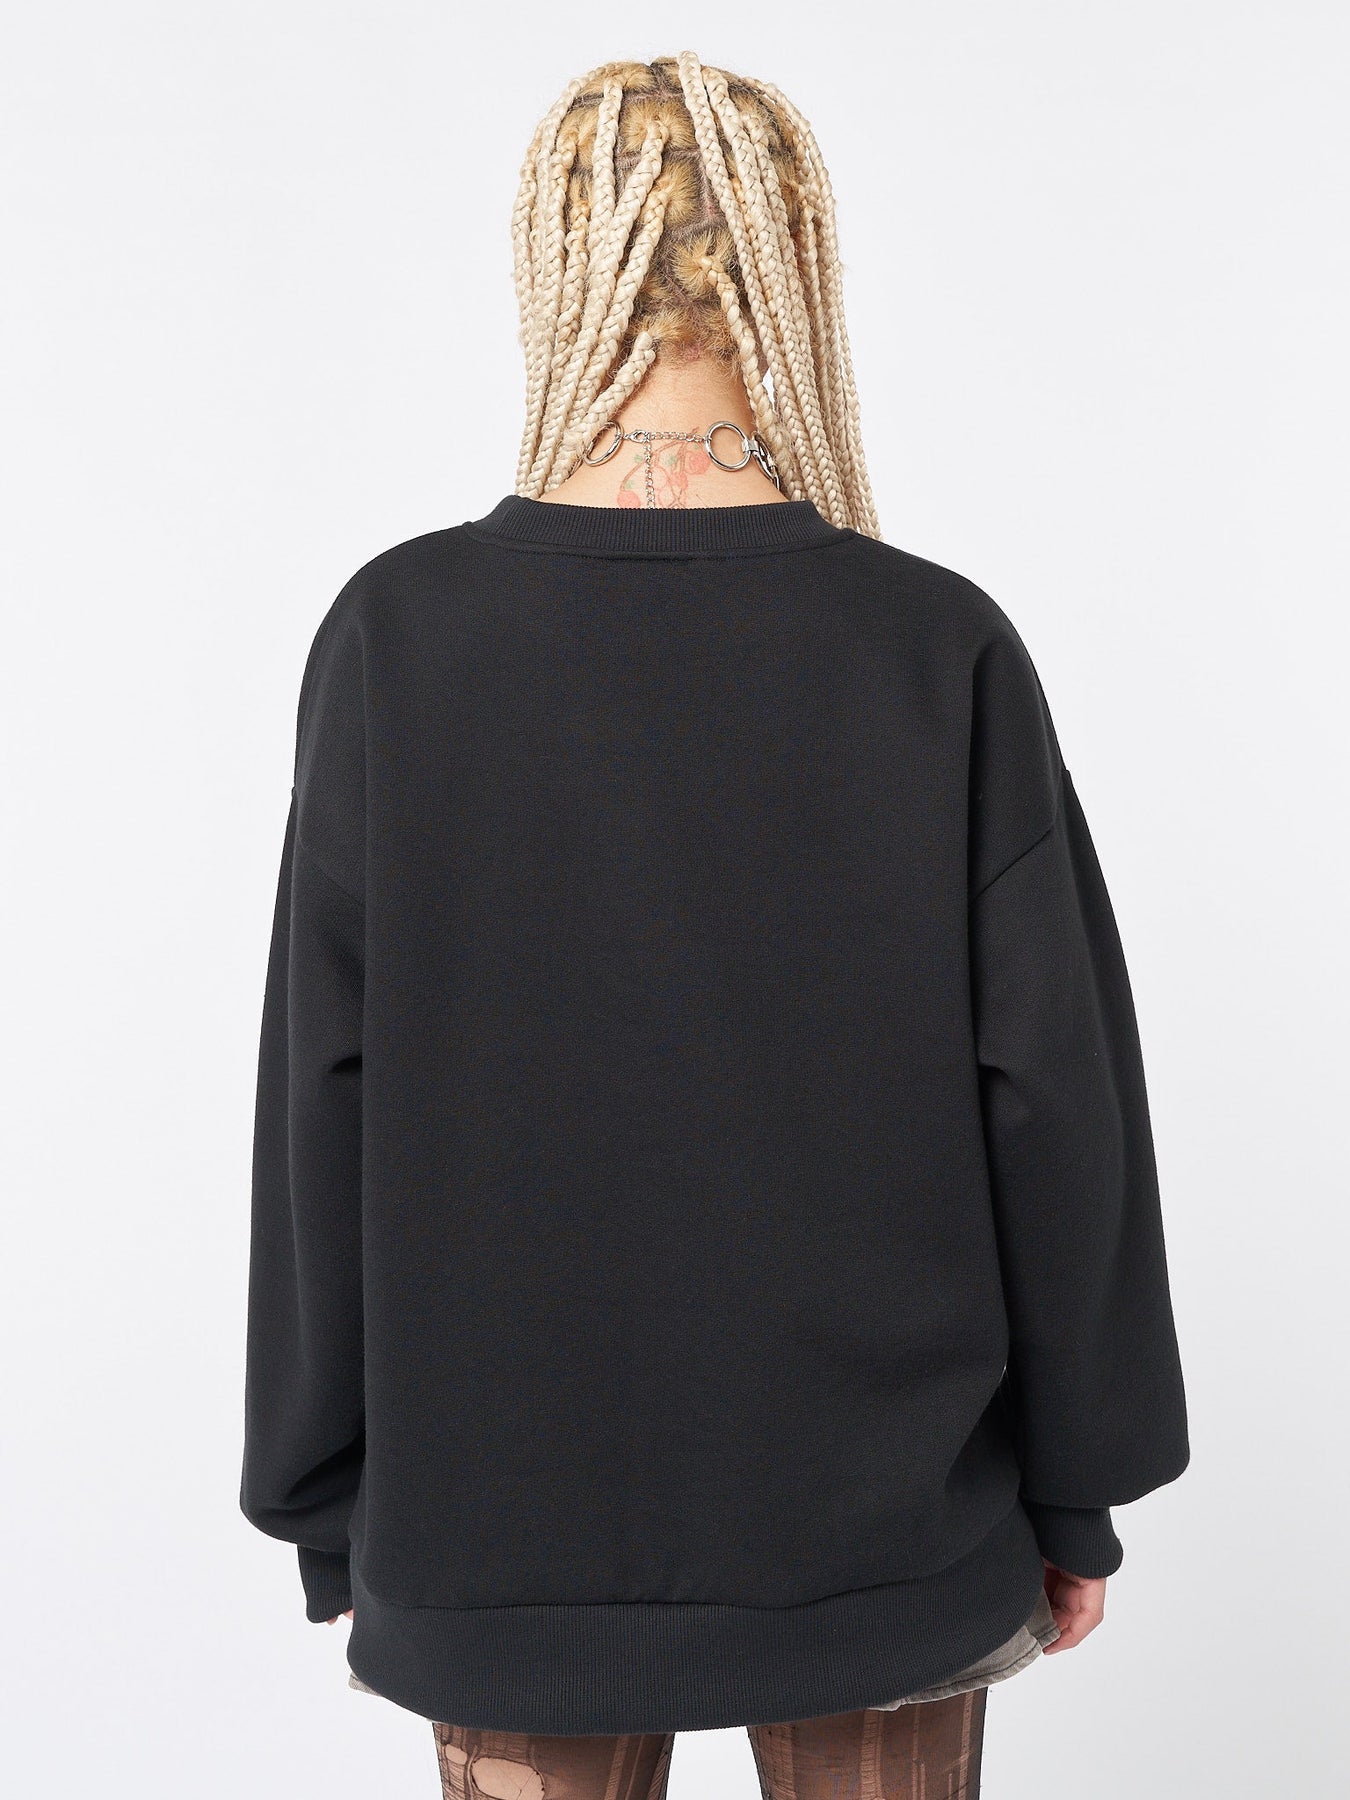 Overthinker Black Lace Up Sweatshirt | Minga US